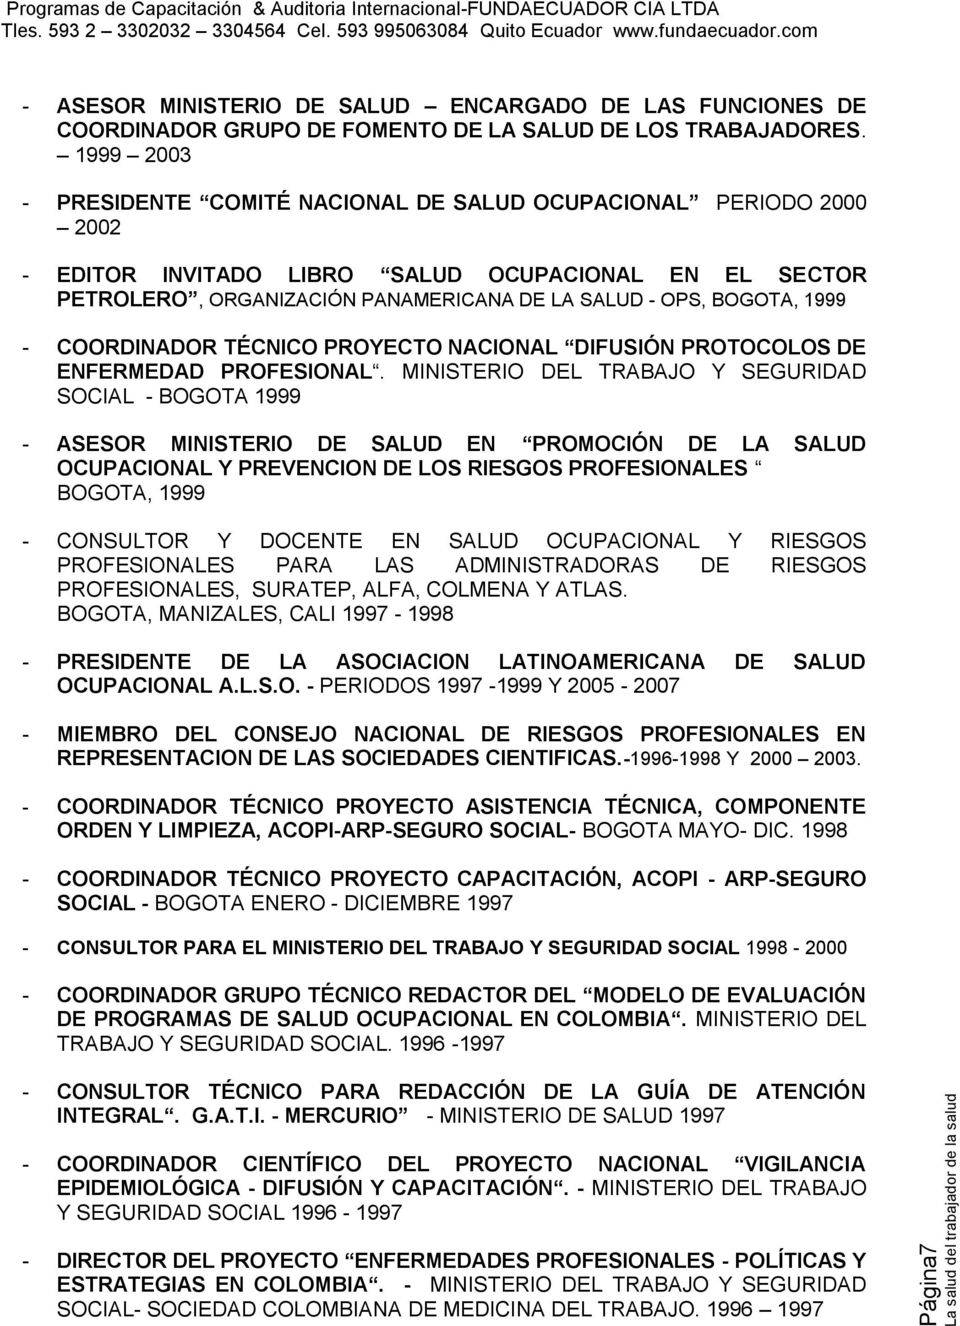 1999 - COORDINADOR TÉCNICO PROYECTO NACIONAL DIFUSIÓN PROTOCOLOS DE ENFERMEDAD PROFESIONAL.